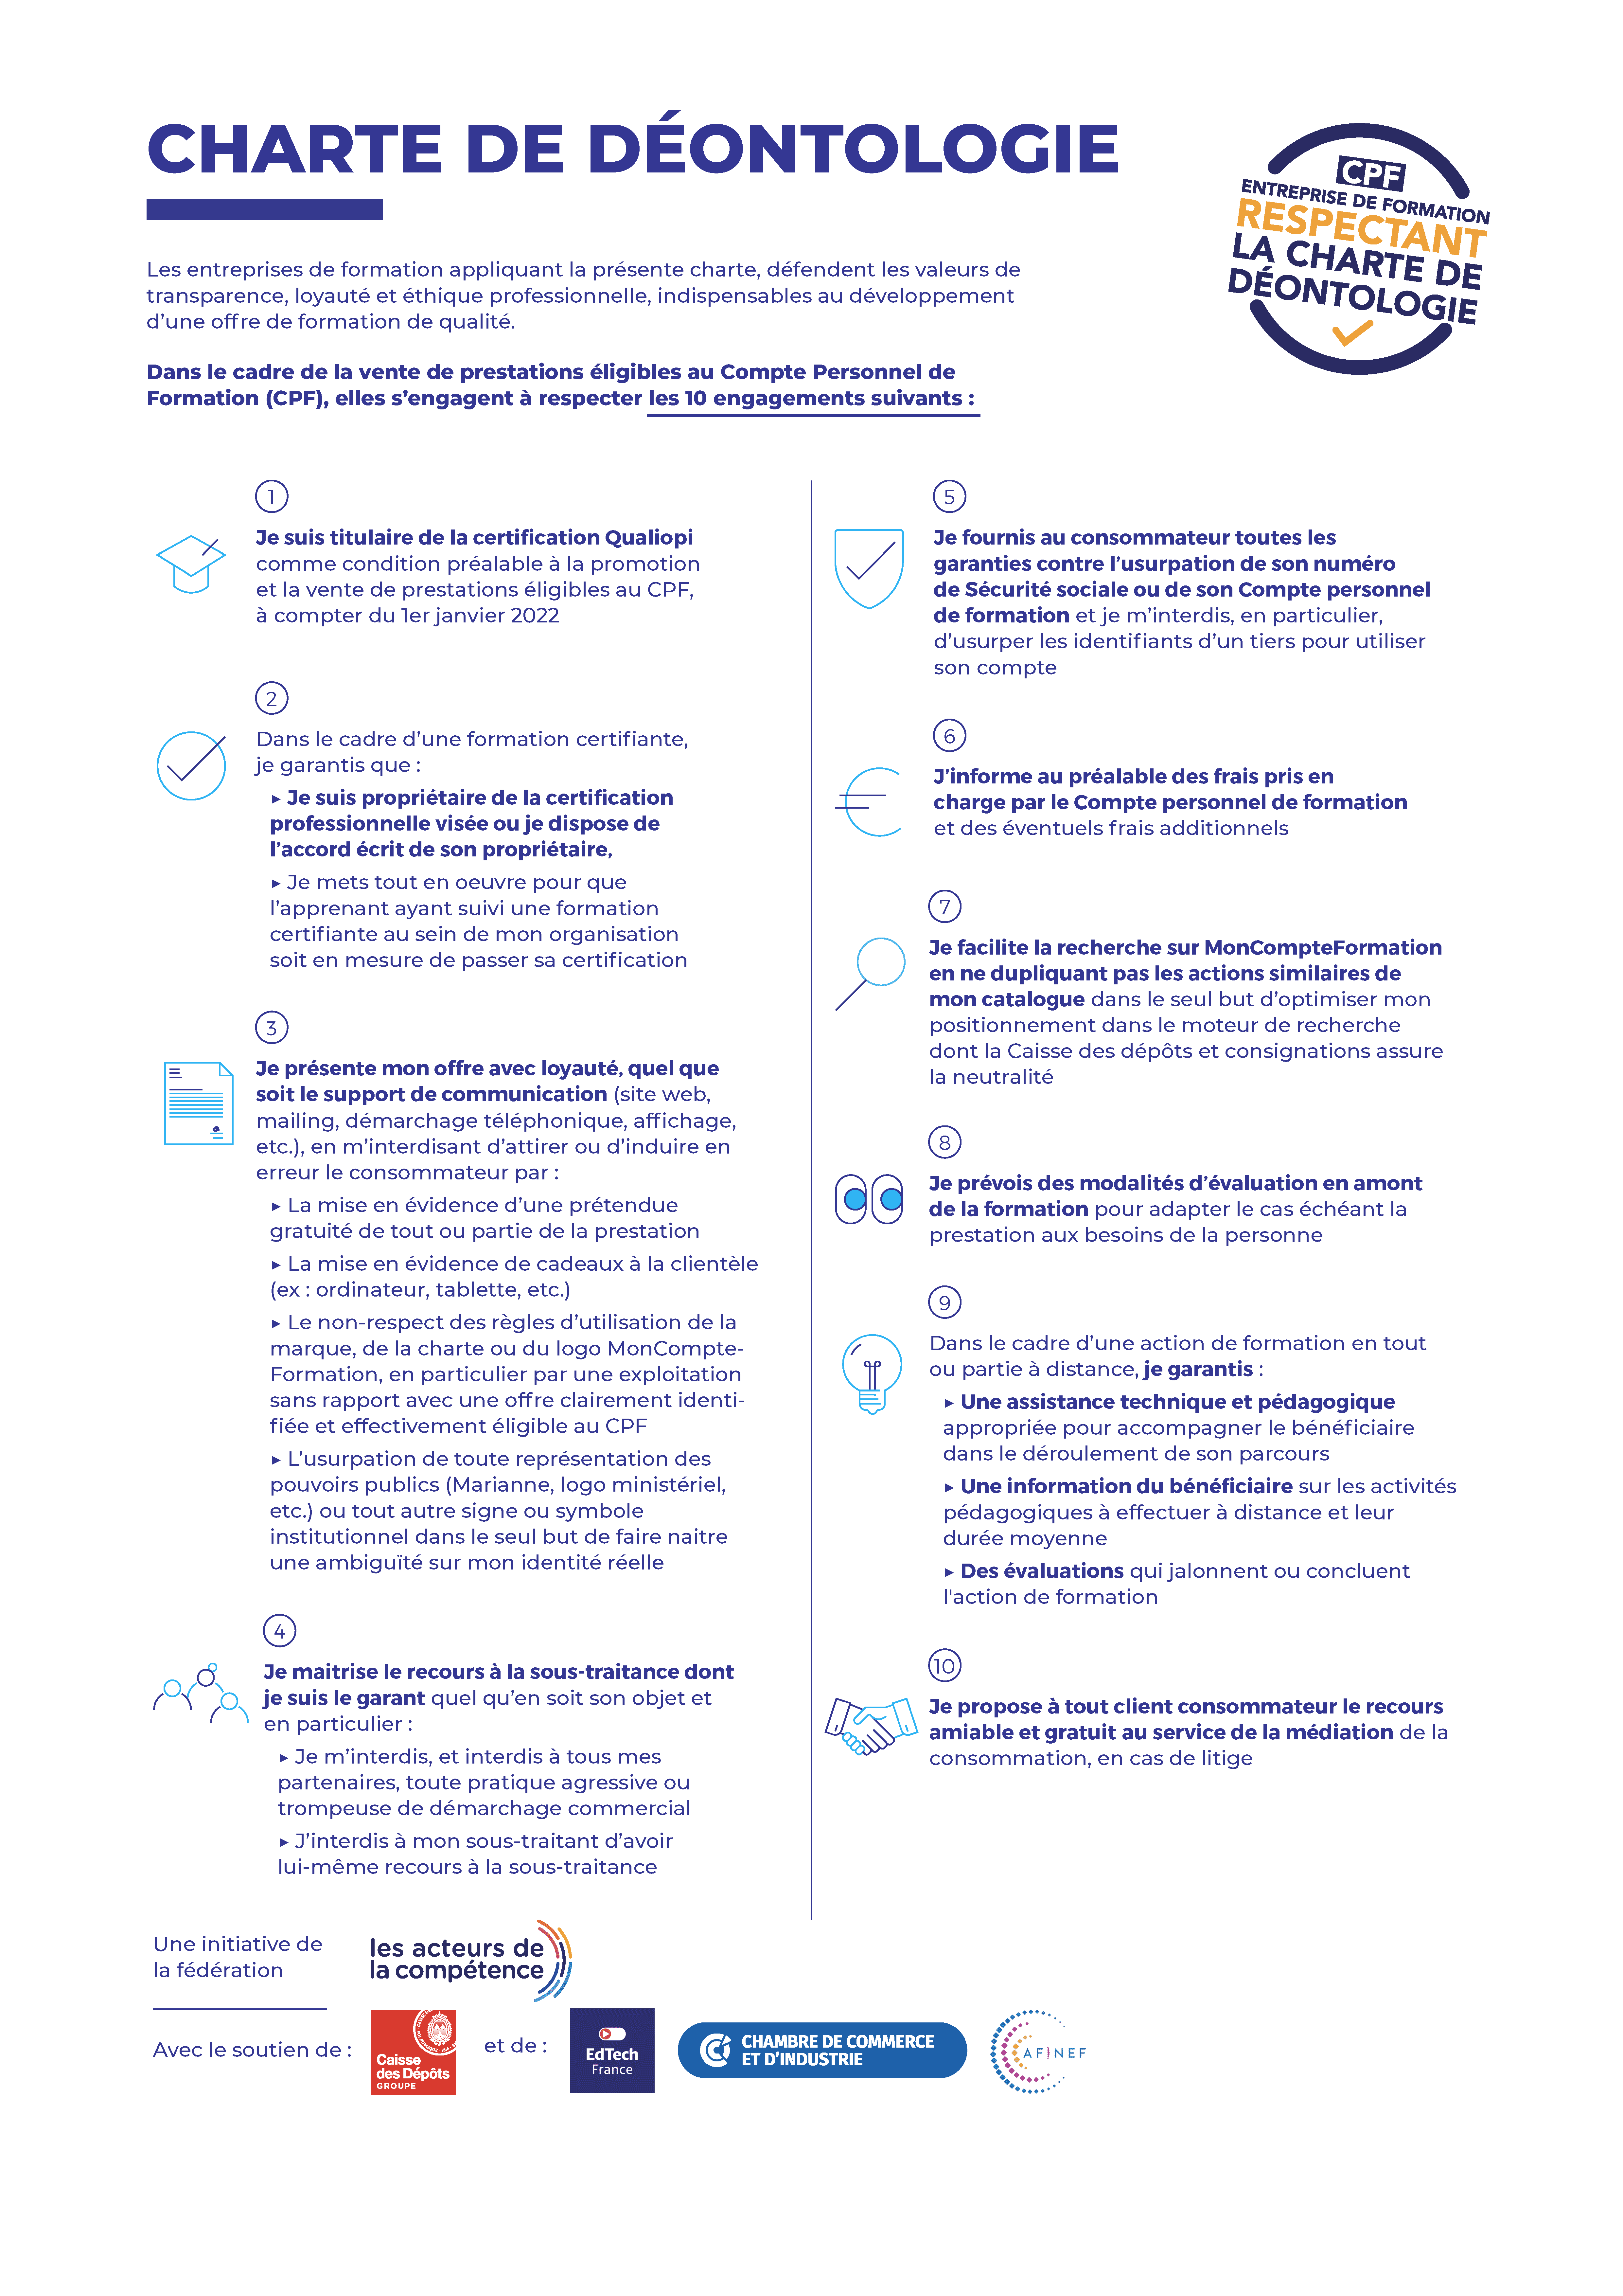 Charte déontologie CPF